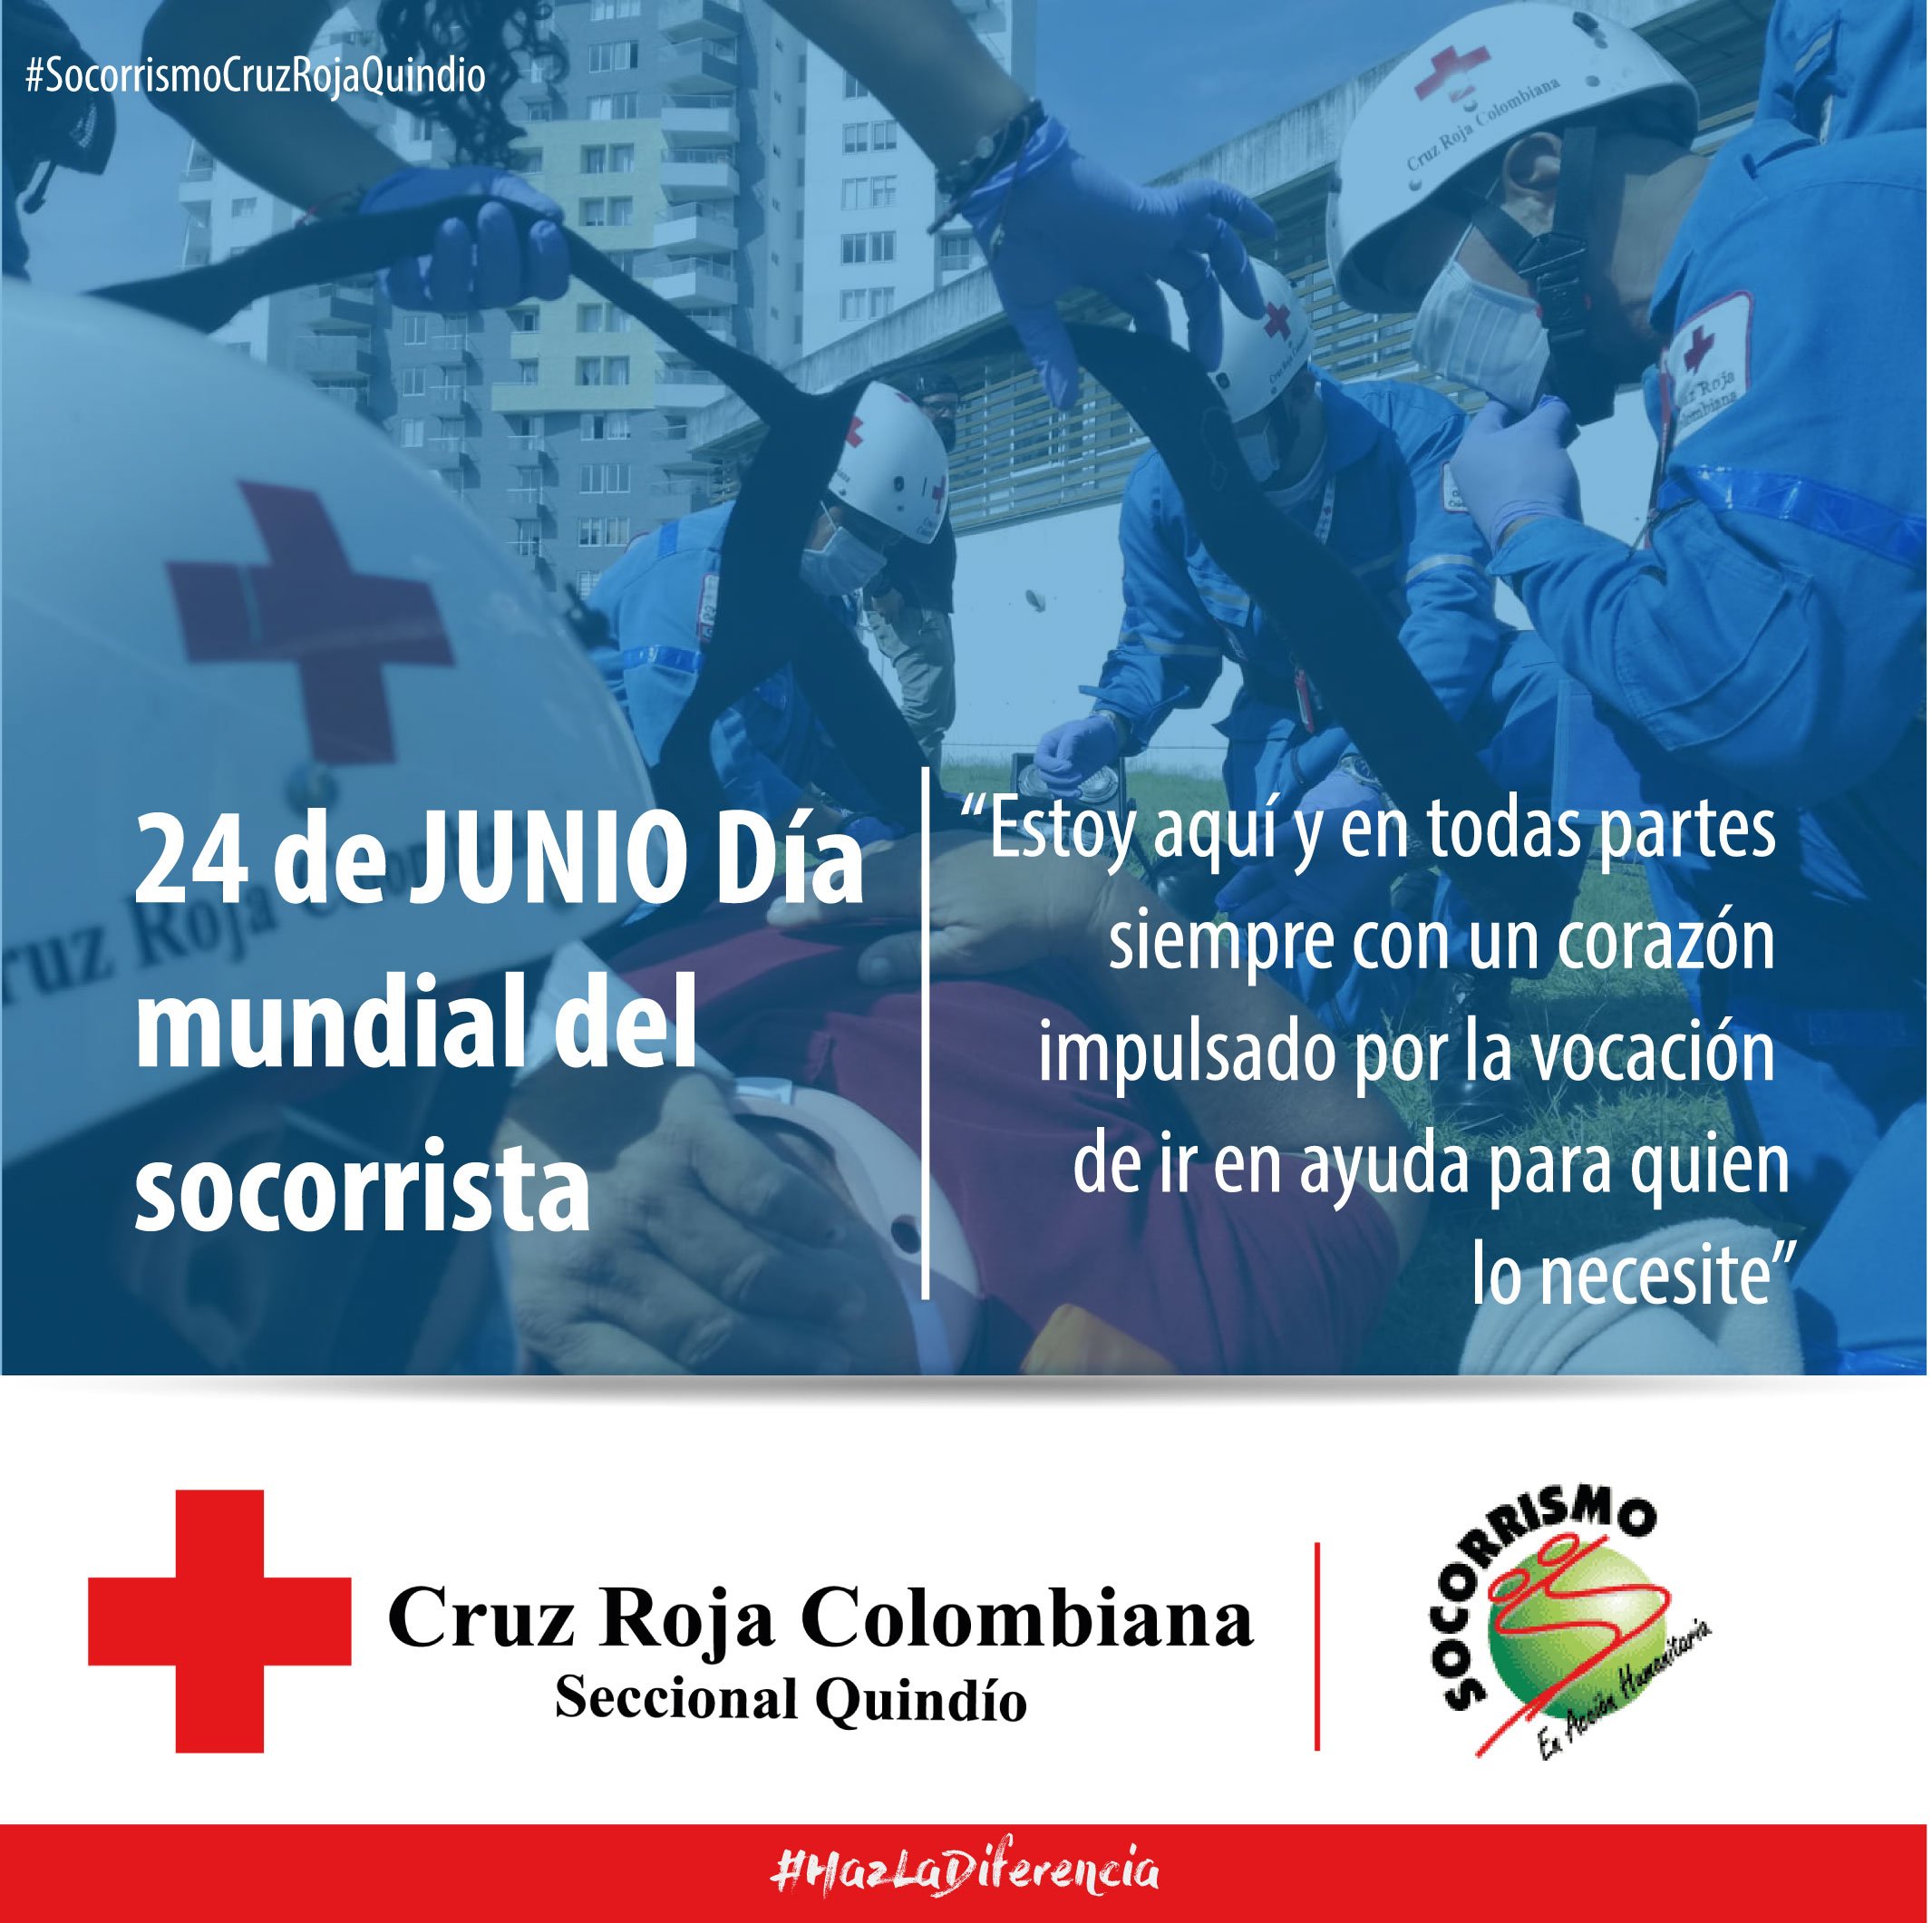 Cruz Roja on Twitter: "Estoy aquí y en todas partes #SocorrismoCruzRojaQuindío - 24 de Junio Día Mundial Del Socorrista. @cruzrojacol @voluntariadocrc / Twitter